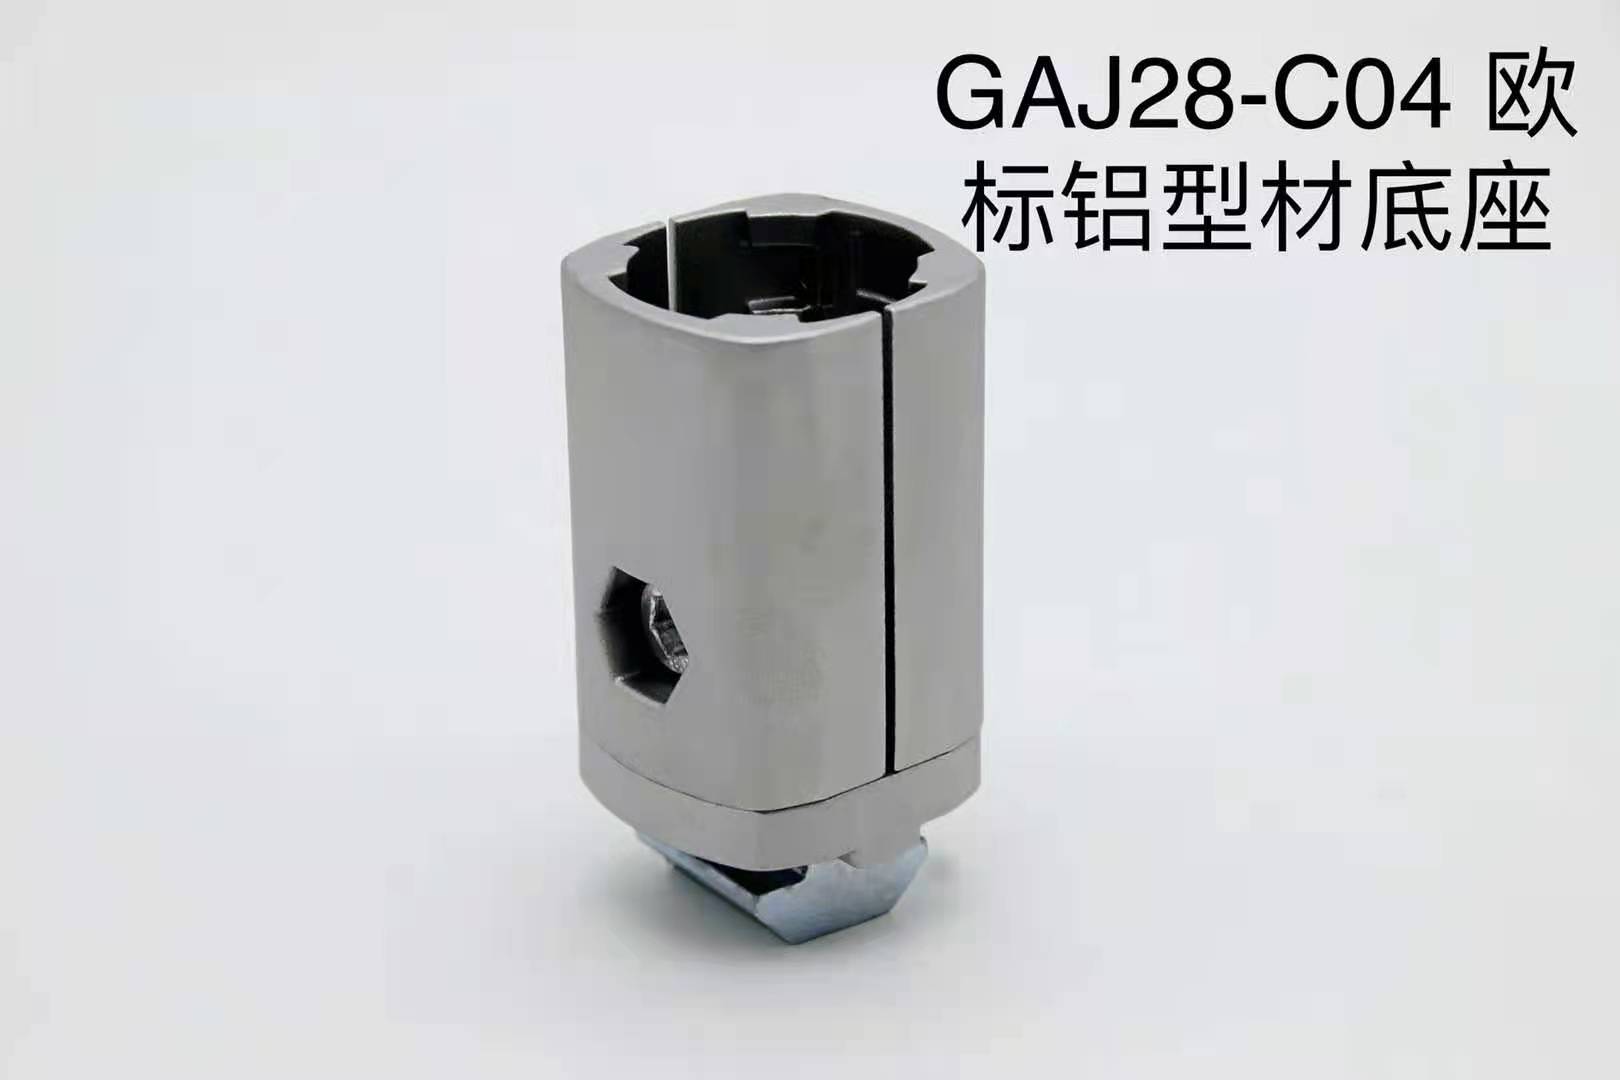 德州GAJ28-C04欧标铝型材底座